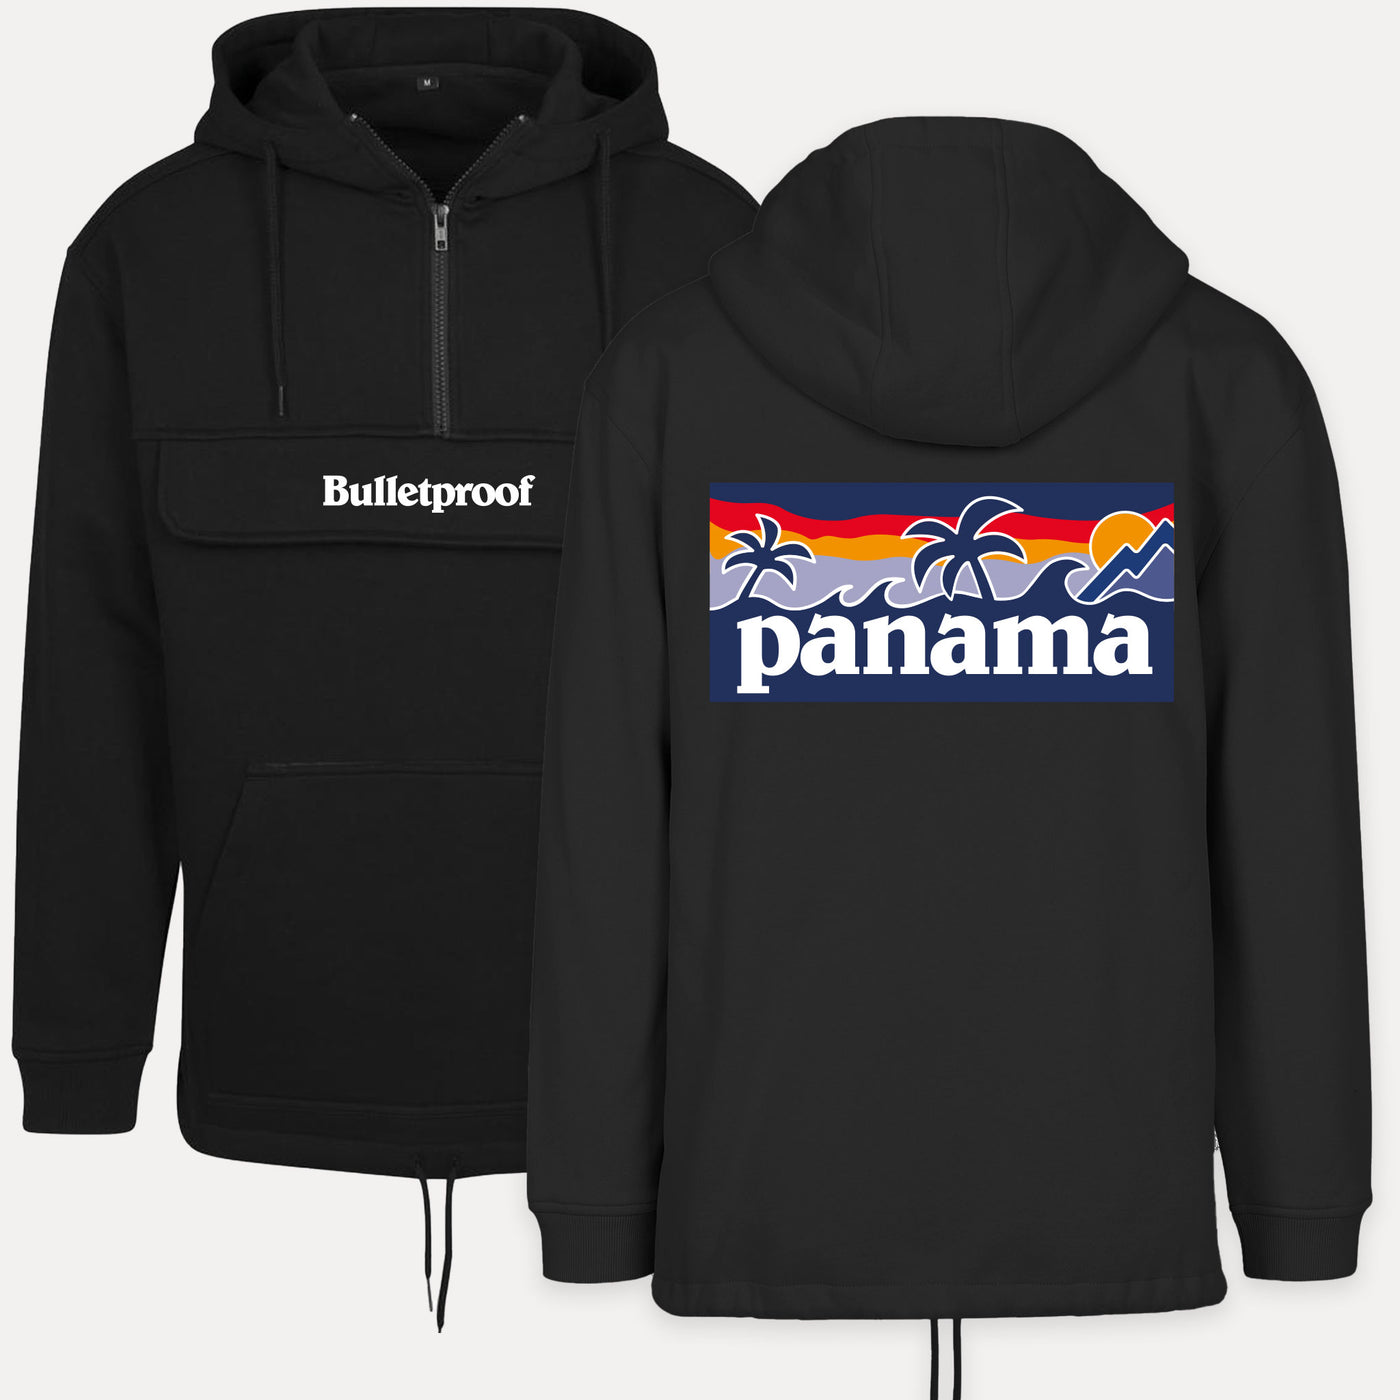 SALE Bulletproof Panama Pull-Over Outdoor Hoodie